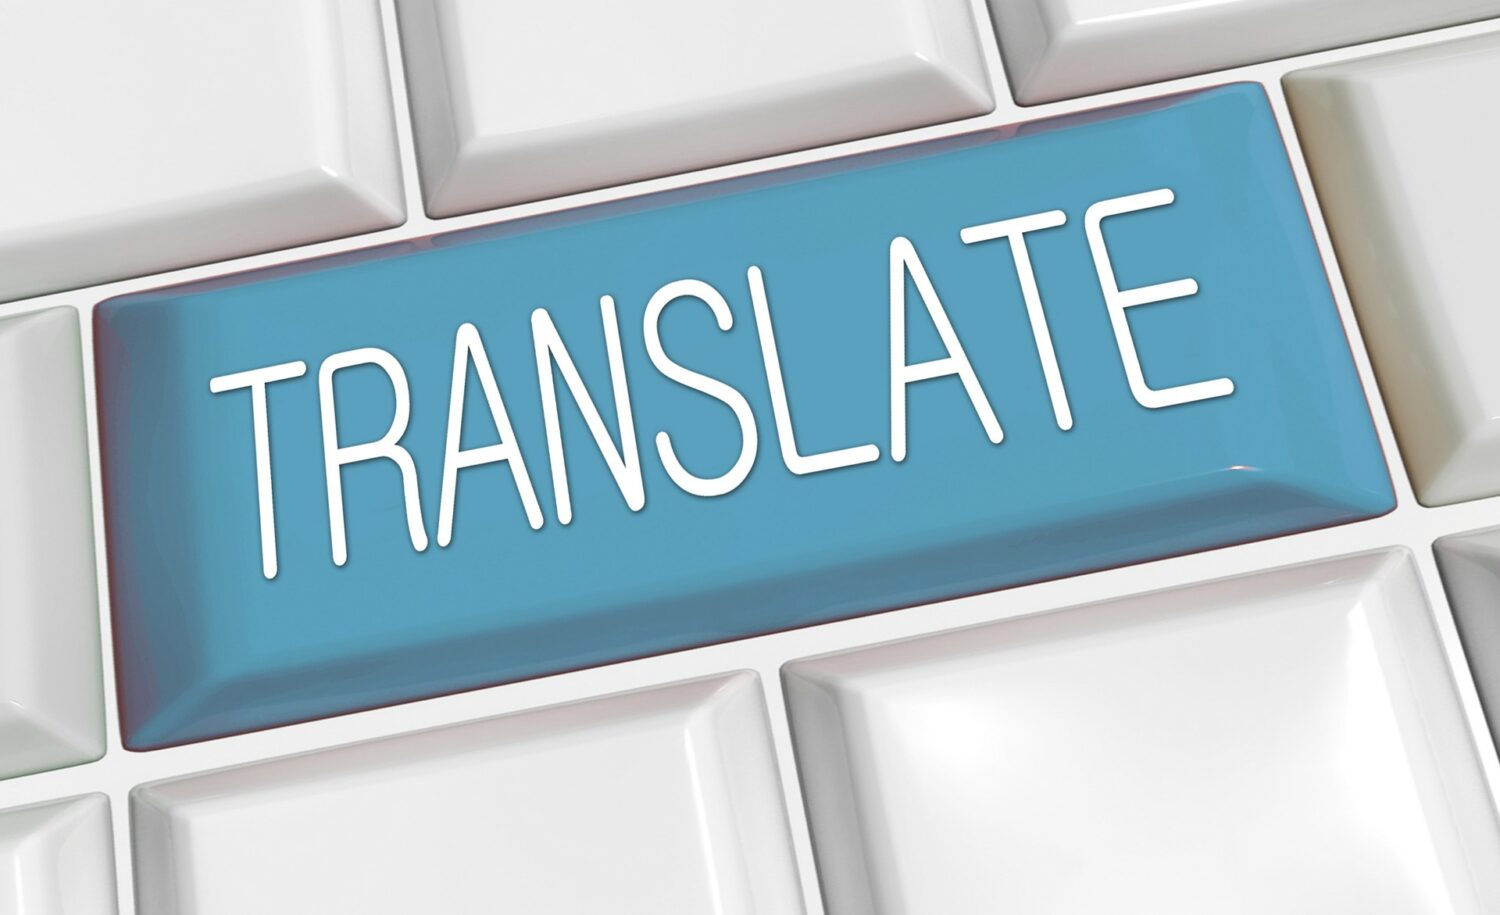 Jak założyć biuro tłumaczeń - poradnik